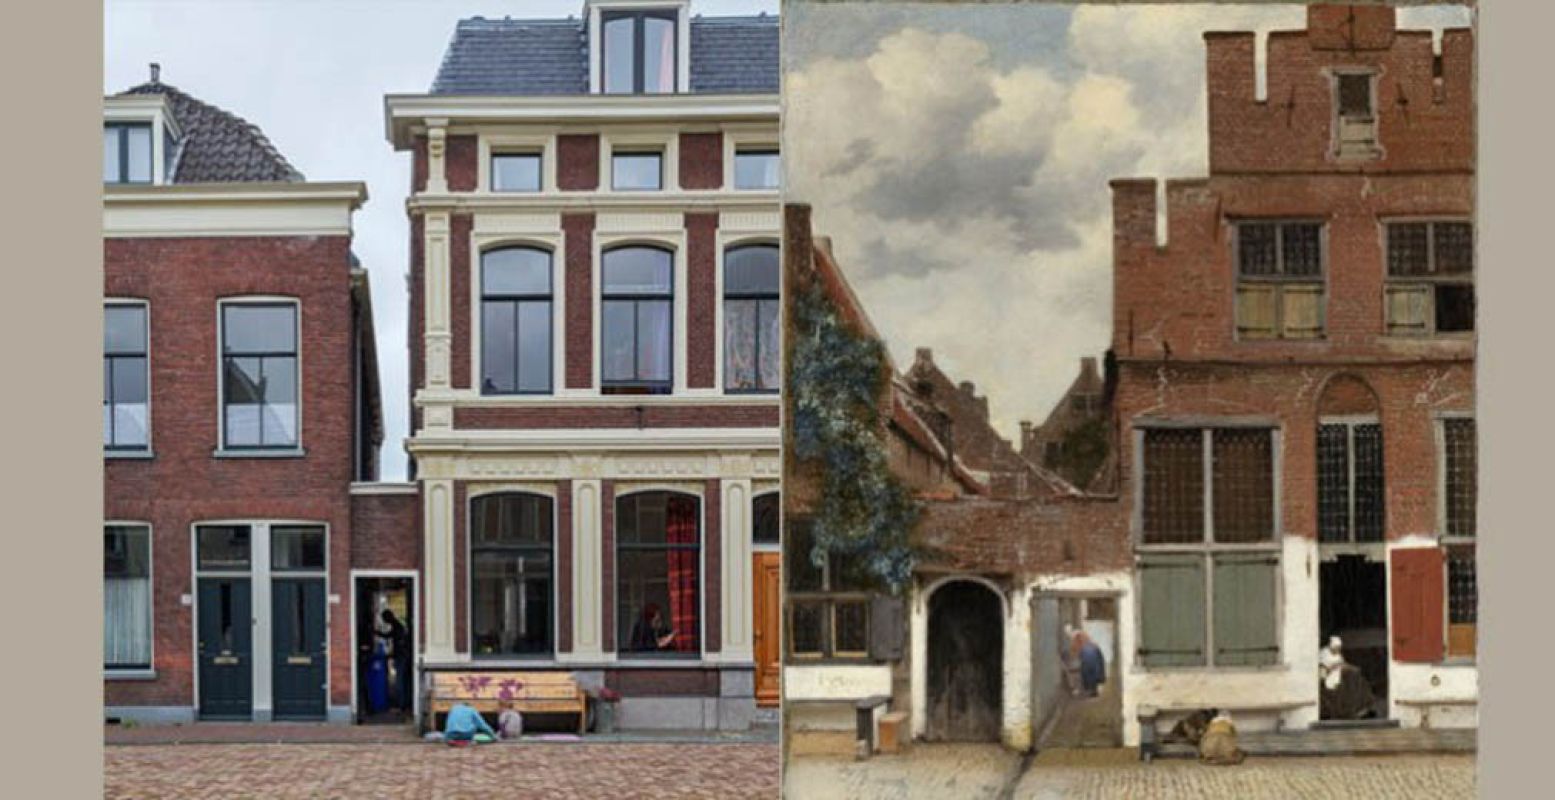 Links: Het straatje met huidige bewoners - Olivier Middendorp. Rechts: Het straatje, ca. 1658, Johannes Vermeer.